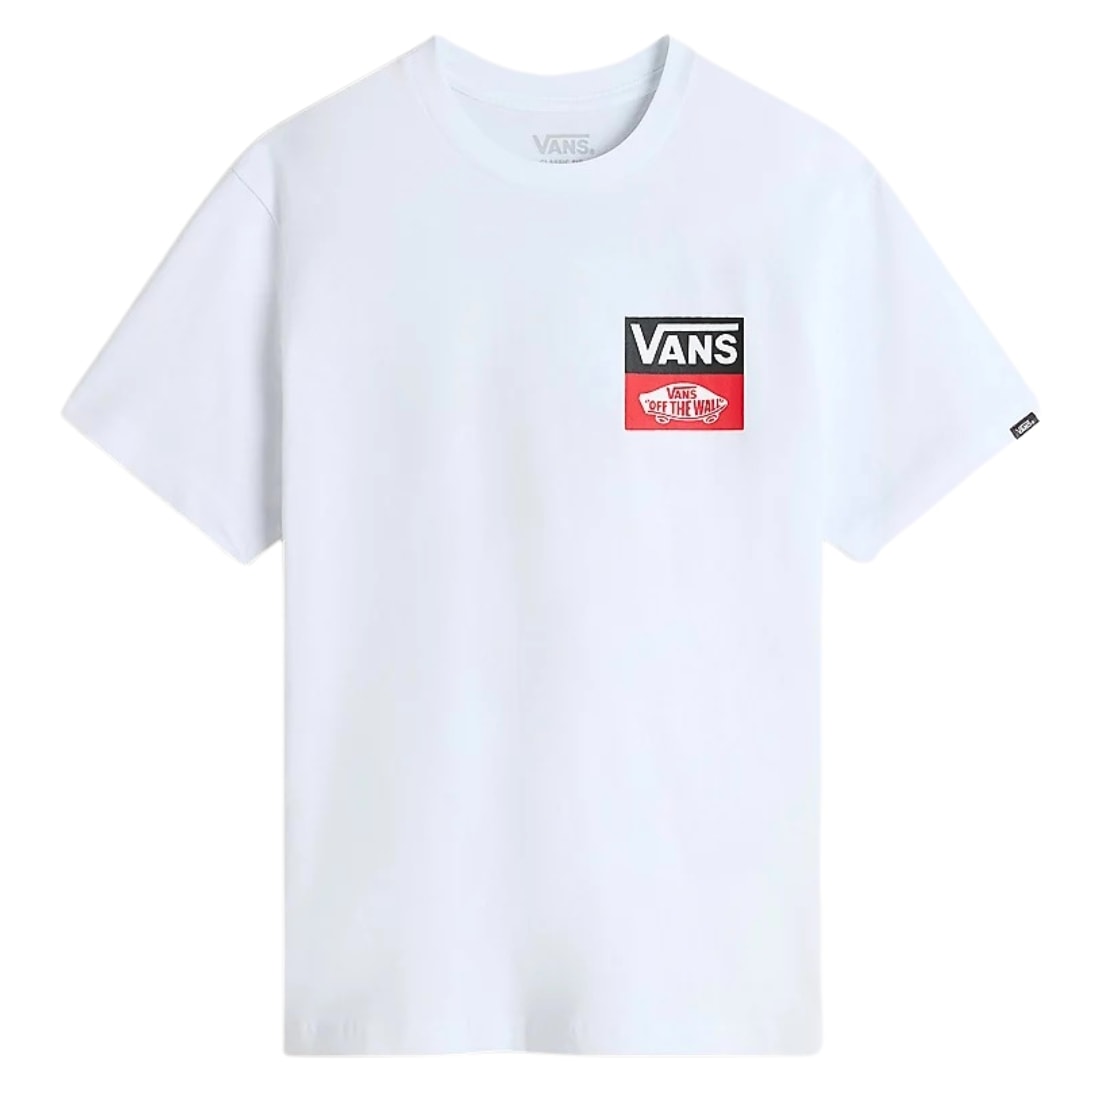 Vans Kids OG Logo T-Shirt - White - Boys Skate Brand T-Shirt by Vans